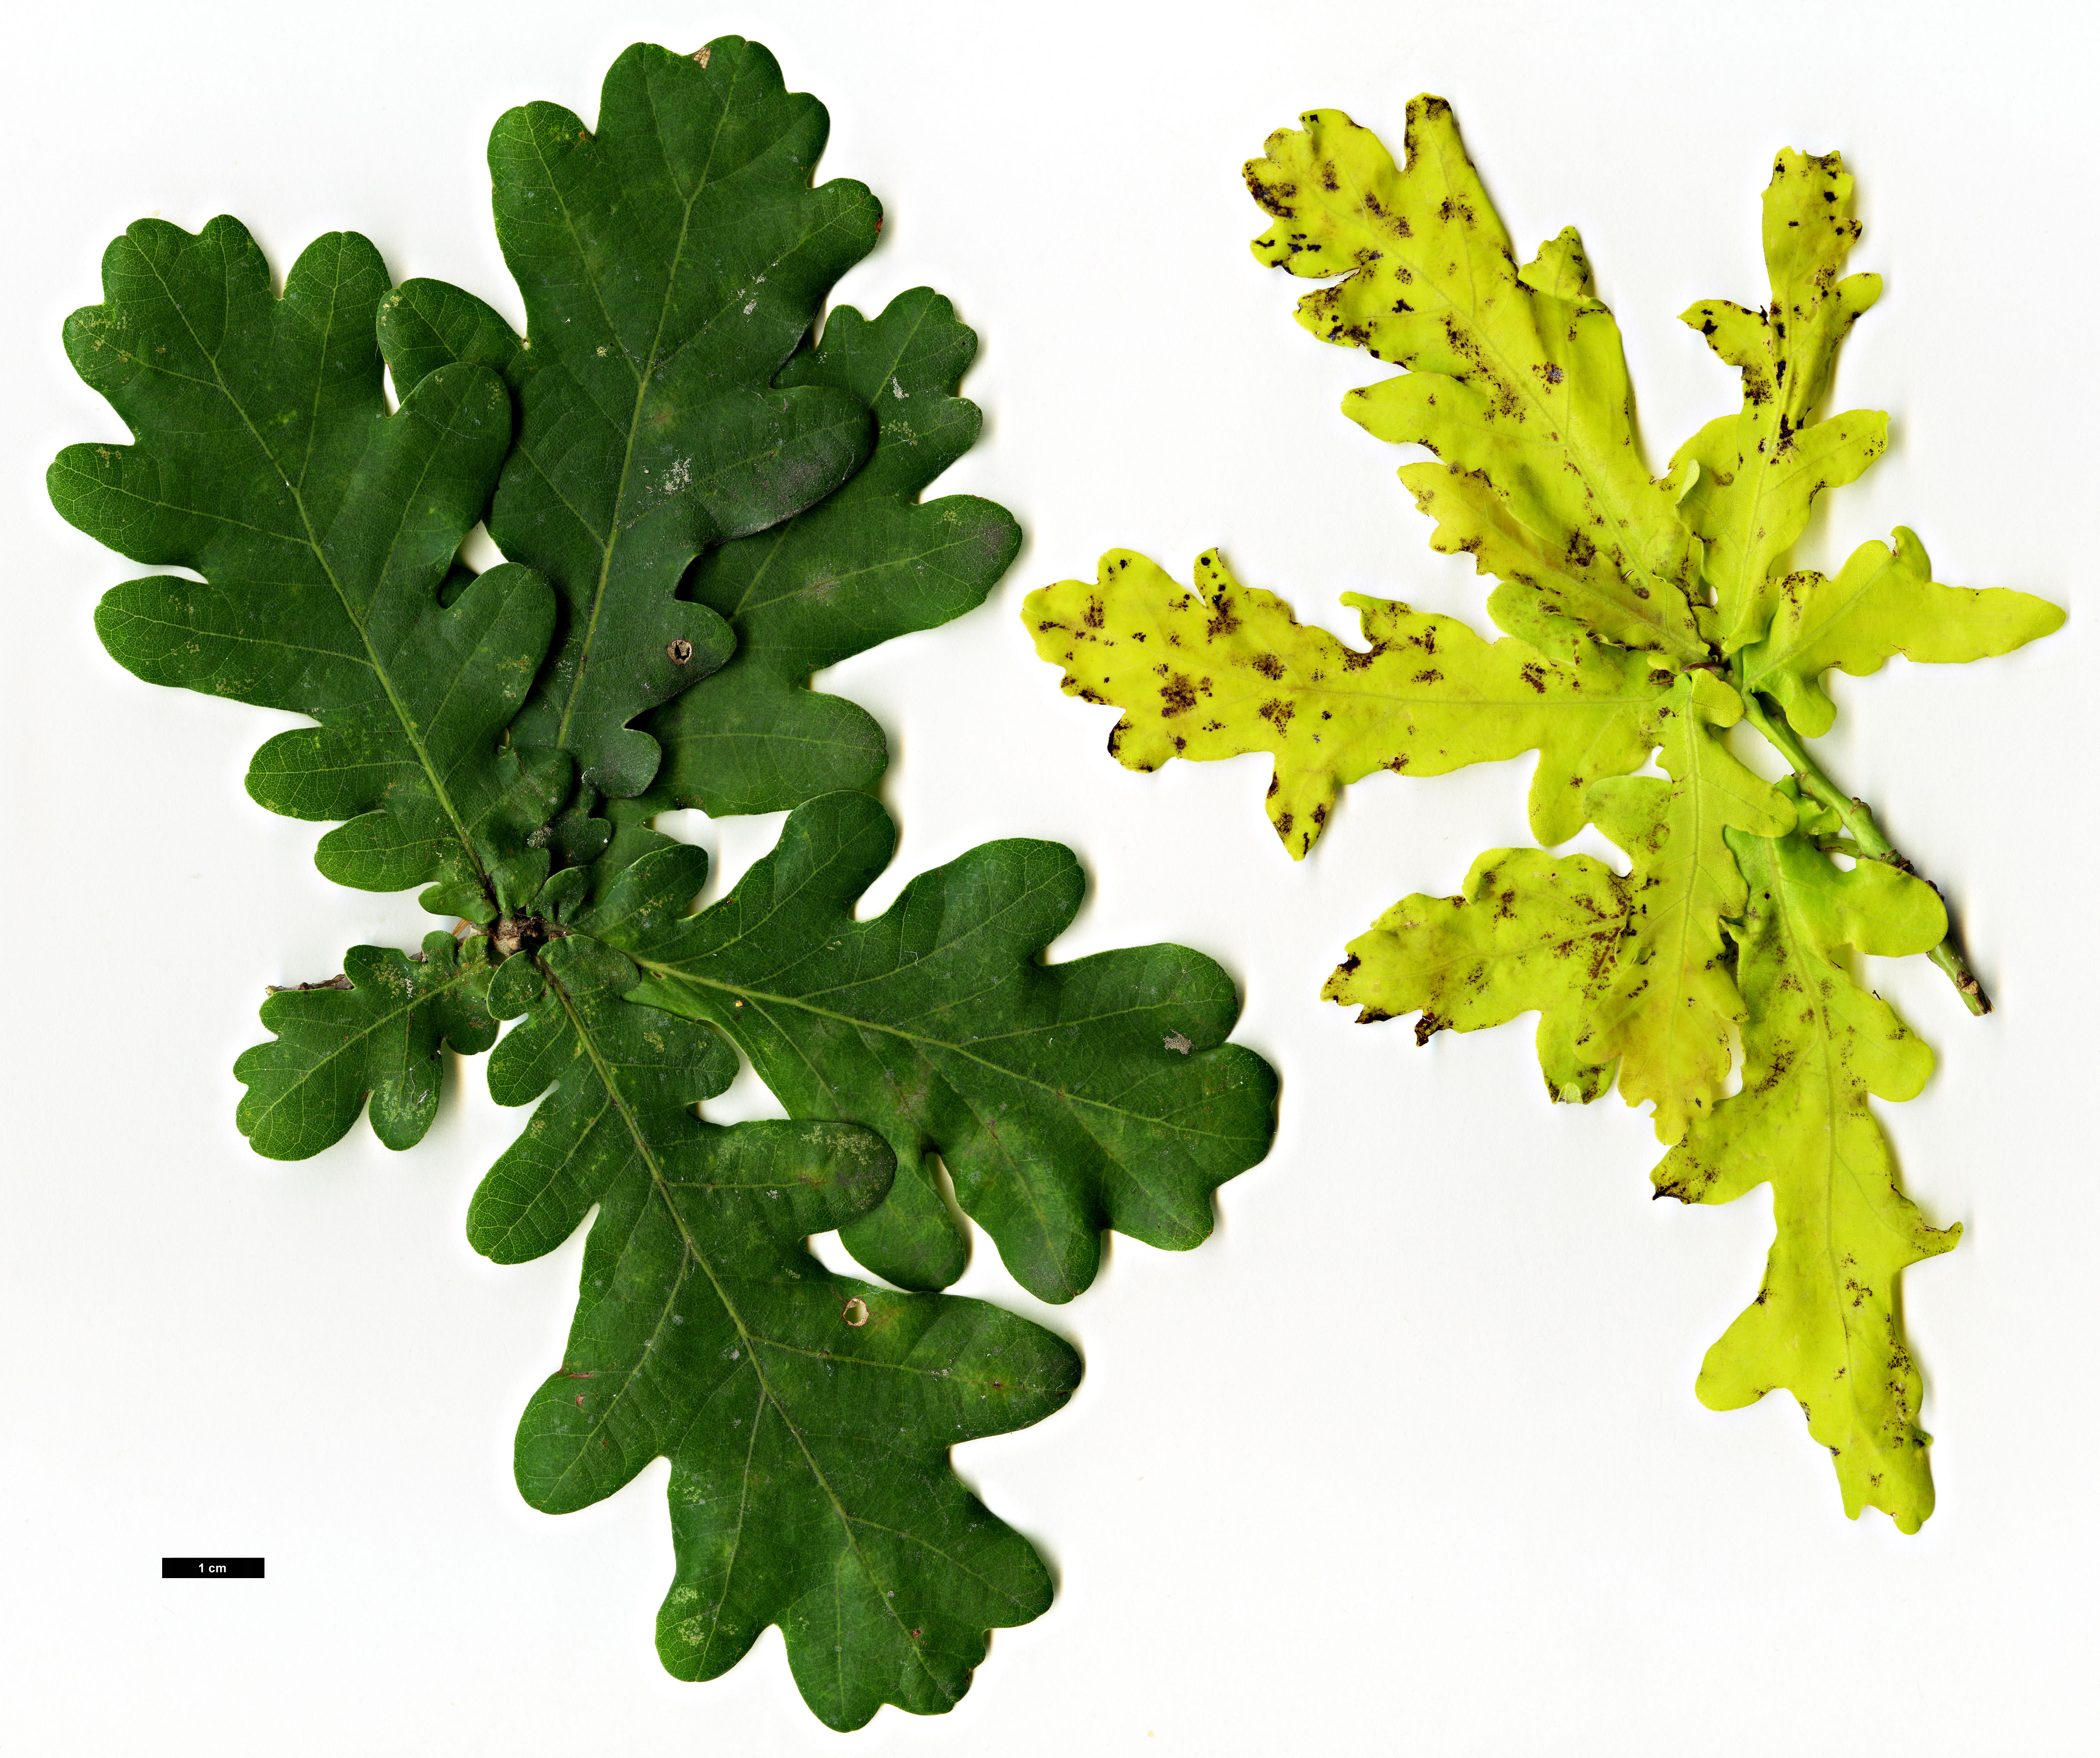 High resolution image: Family: Fagaceae - Genus: Quercus - Taxon: robur - SpeciesSub: 'Concordia'